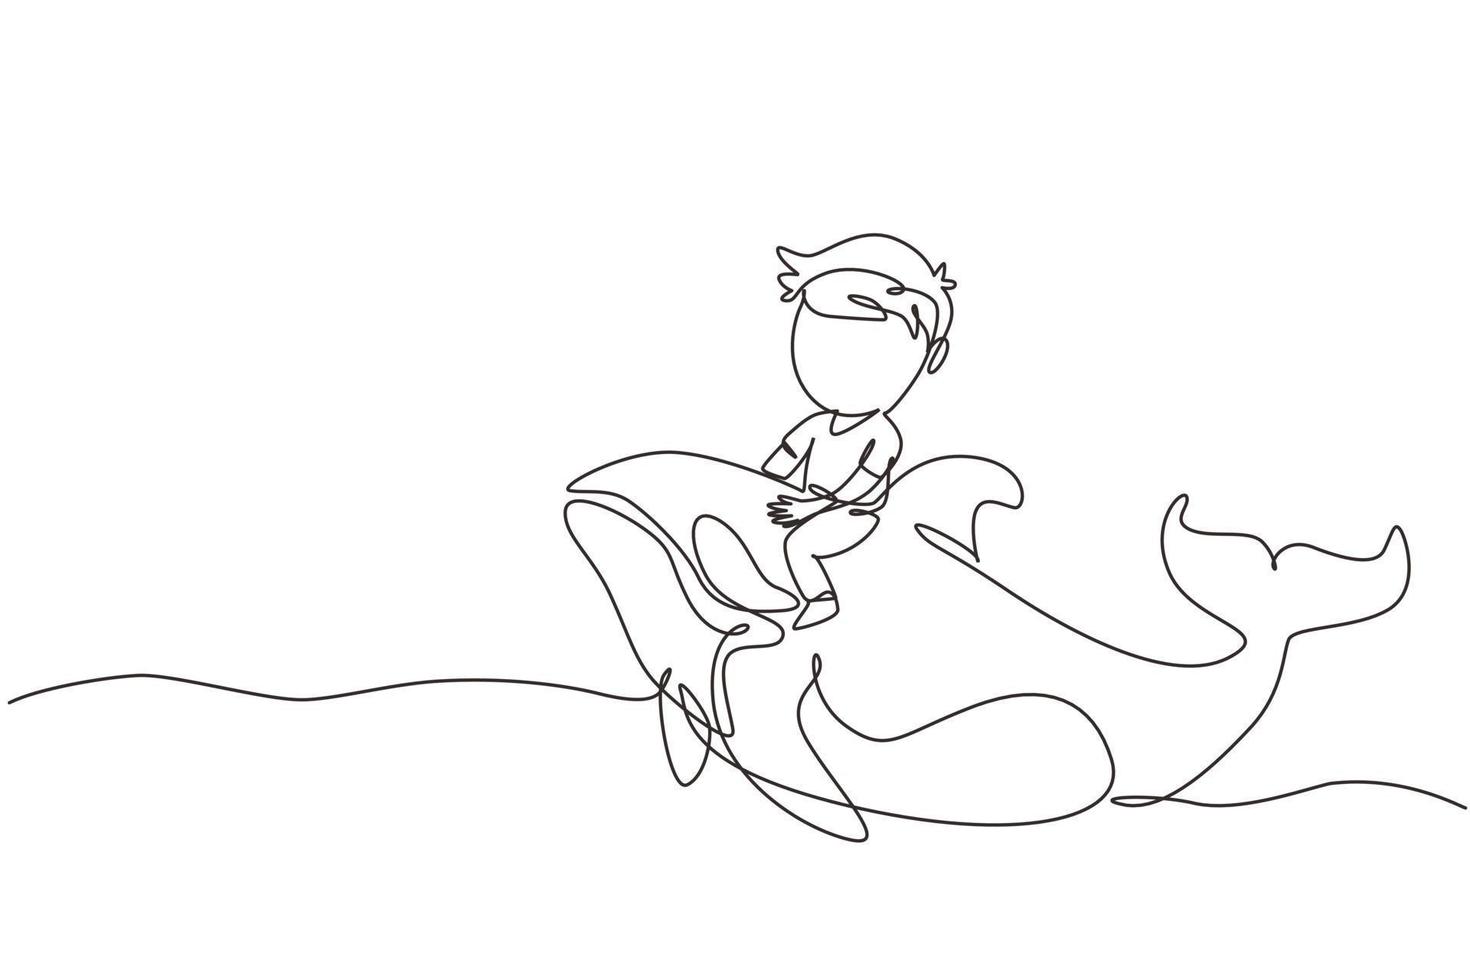 dibujo de una sola línea niño montando orca. niño sentado en la espalda asesino de ballenas en la piscina. asesino de ballenas u orca en el agua. ilustración de vector gráfico de diseño de dibujo de línea continua moderna